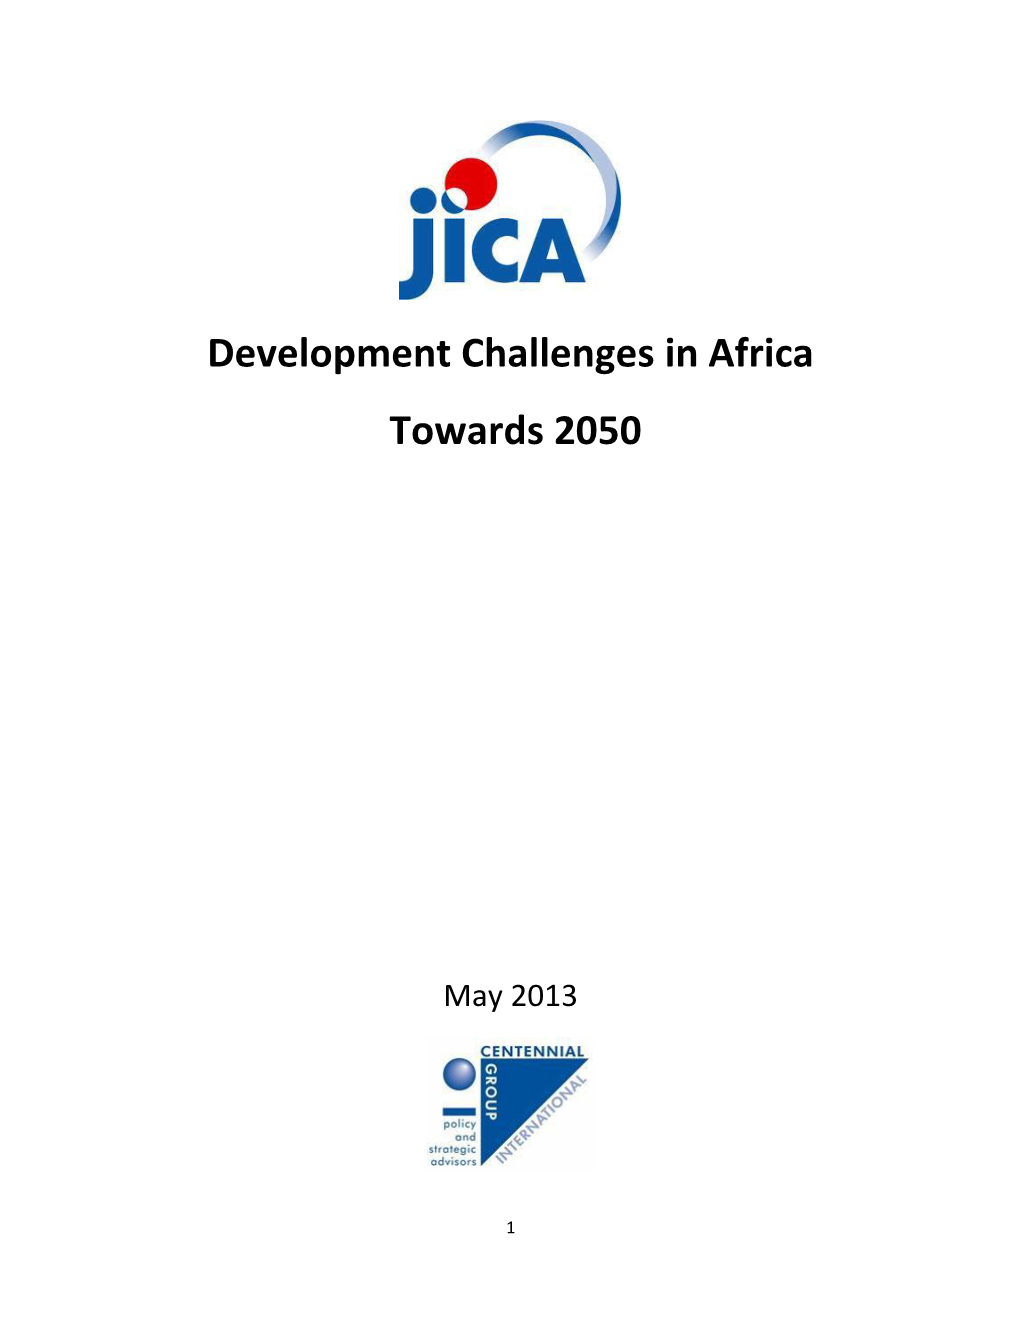 Development Challenges in Africa Towards 2050-JICA